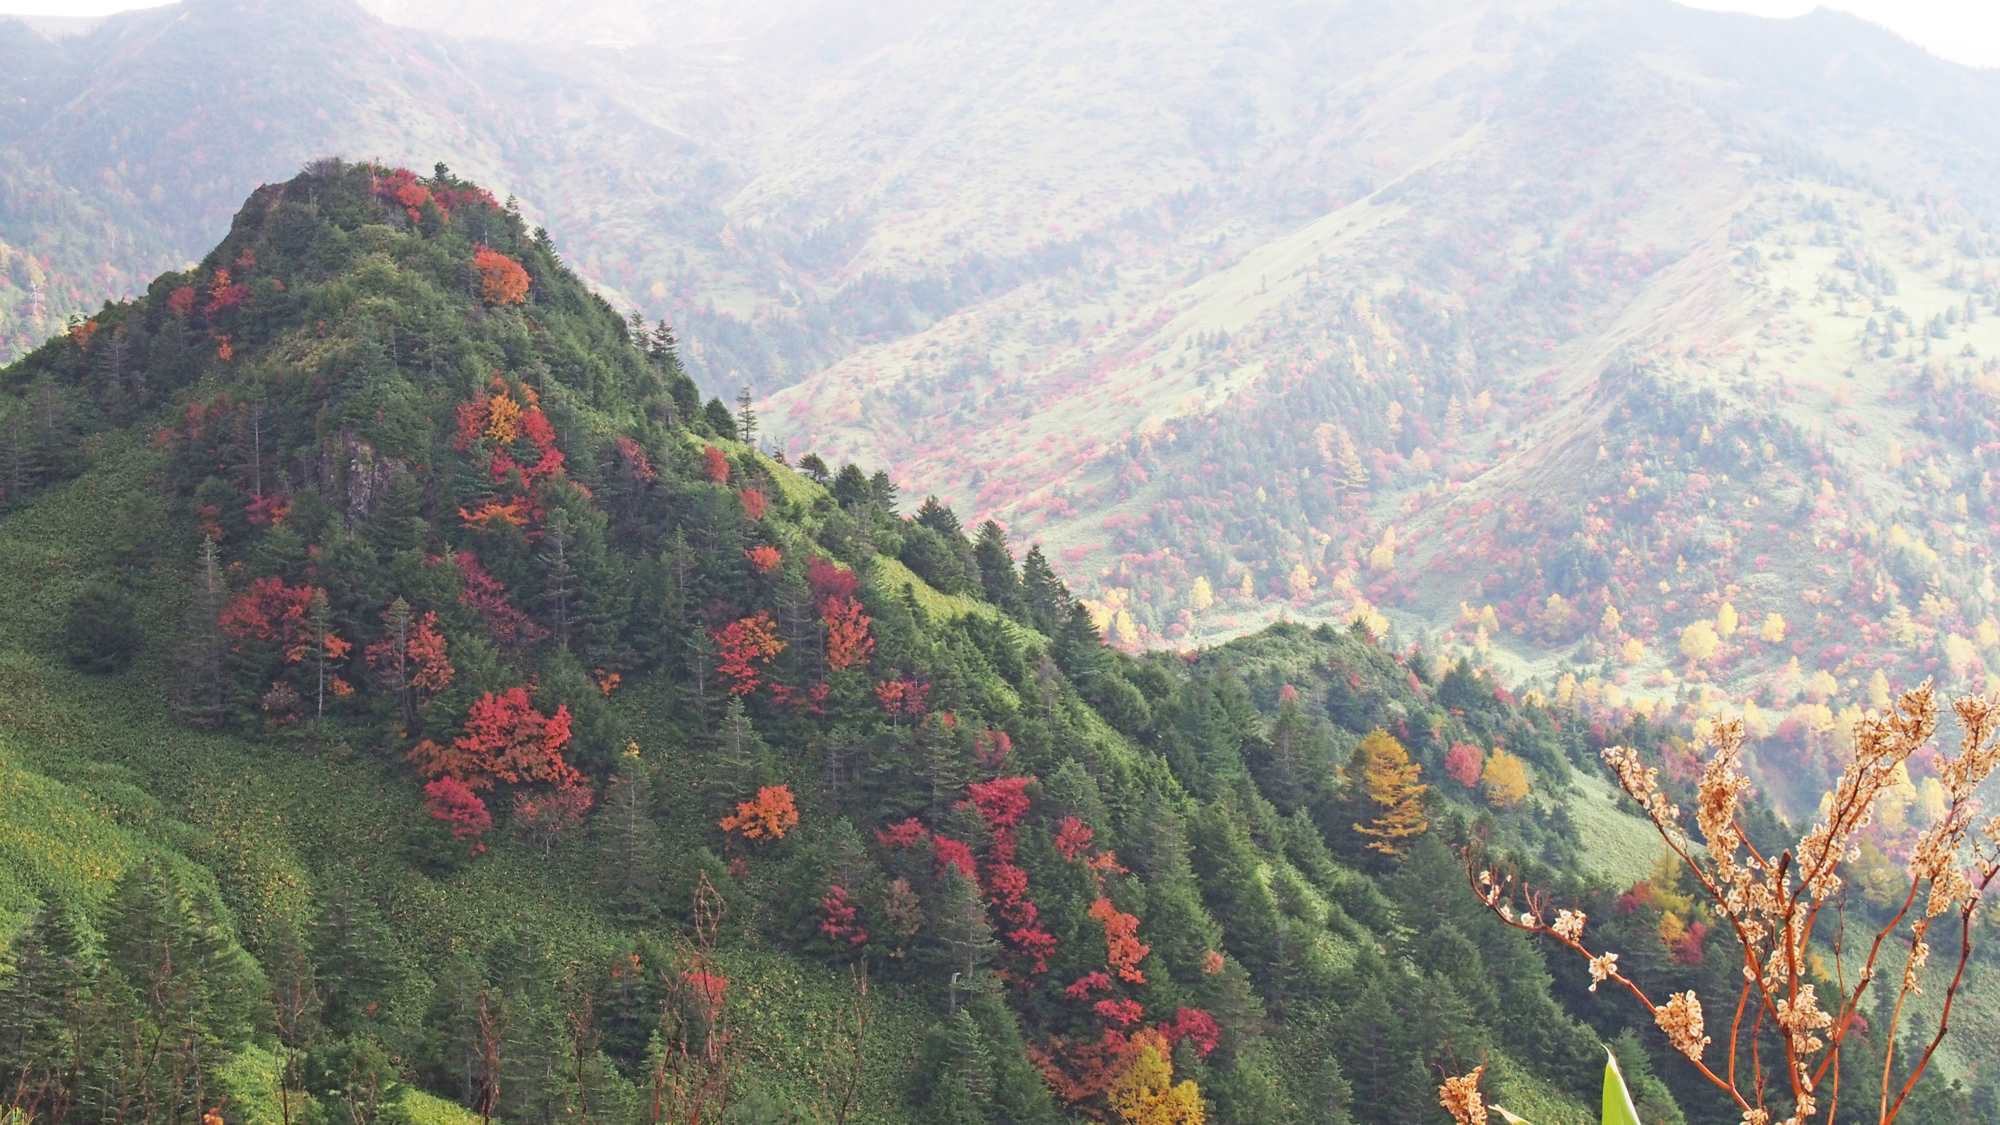 【秋】緑と赤のコントラスト。秋の山々